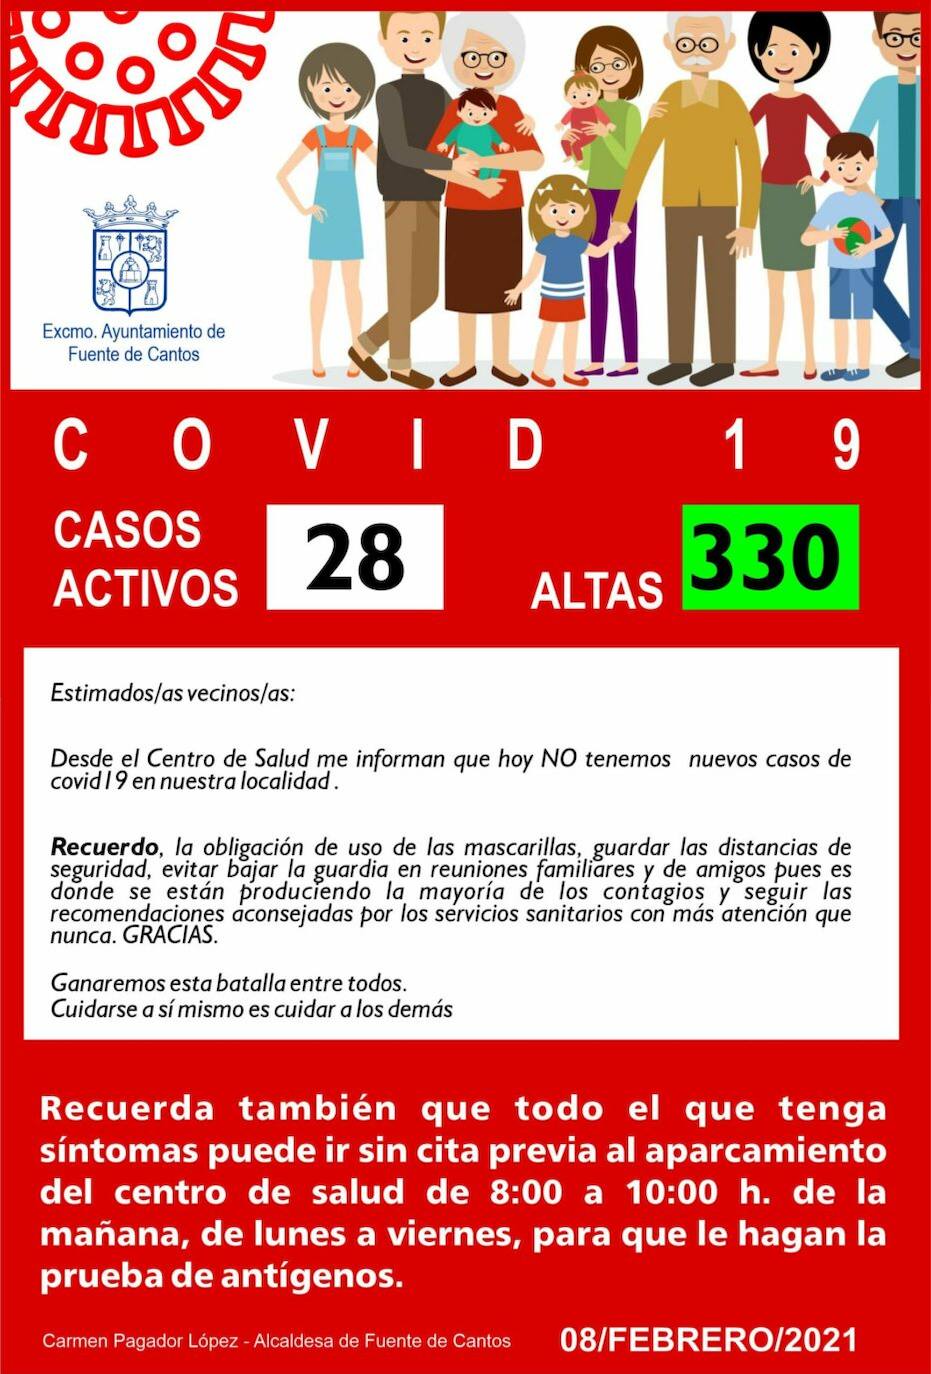 El municipio cuenta con 28 casos